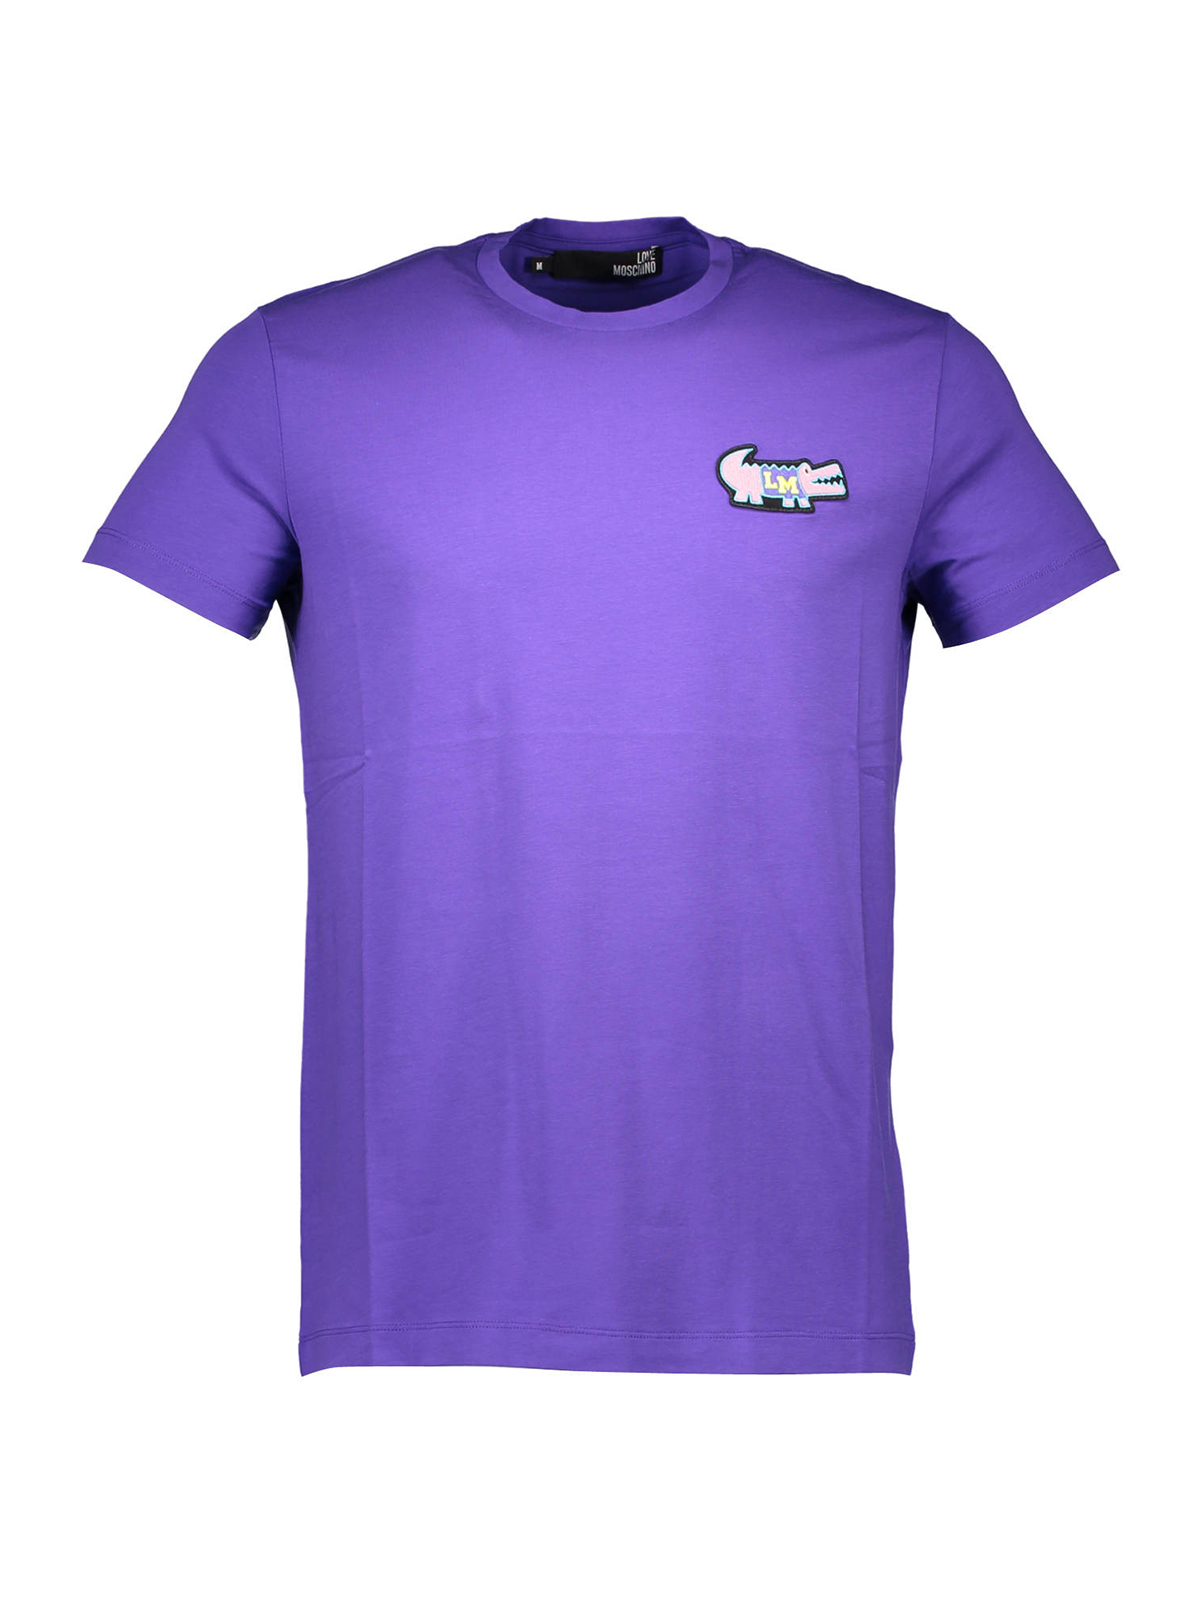 Футболка фиолетовая купить. Фиолетовая футболка. Фиолетовая футболка мужская. Сиреневая футболка. Лиловая футболка мужская.